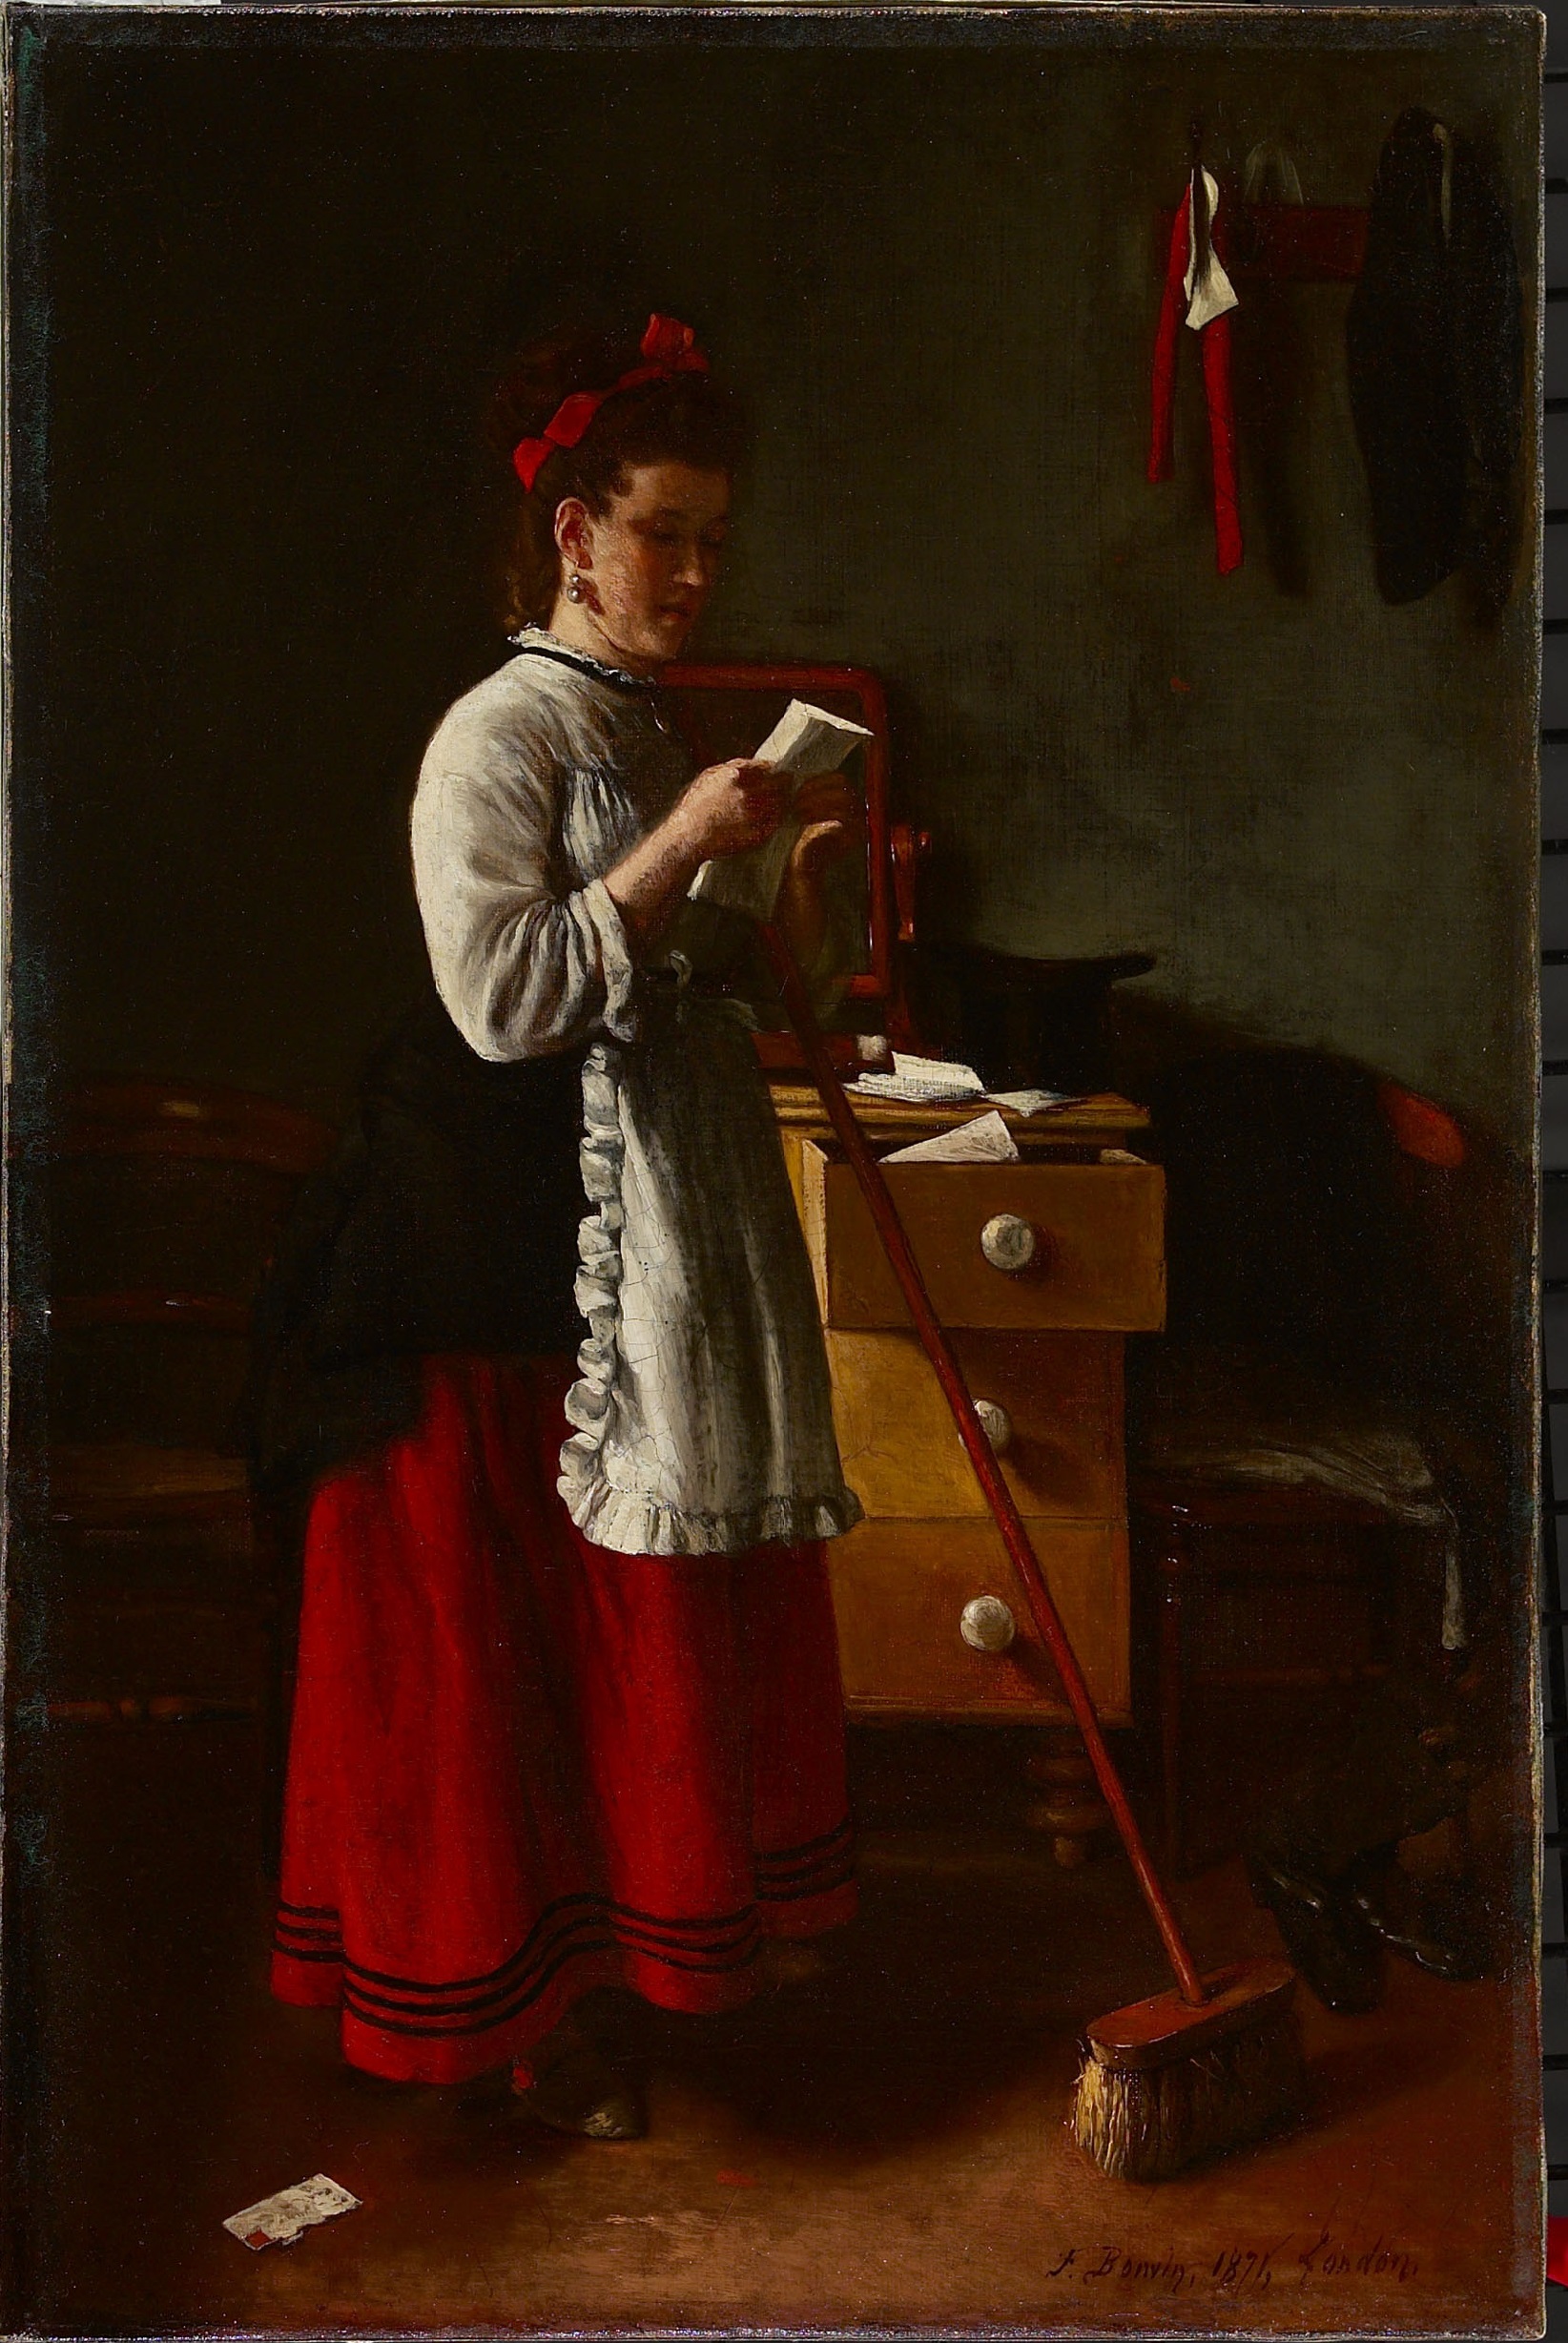 Az indiszkrét szolgáló by François Bonvin - 1871 - 52,8 x 35 cm 